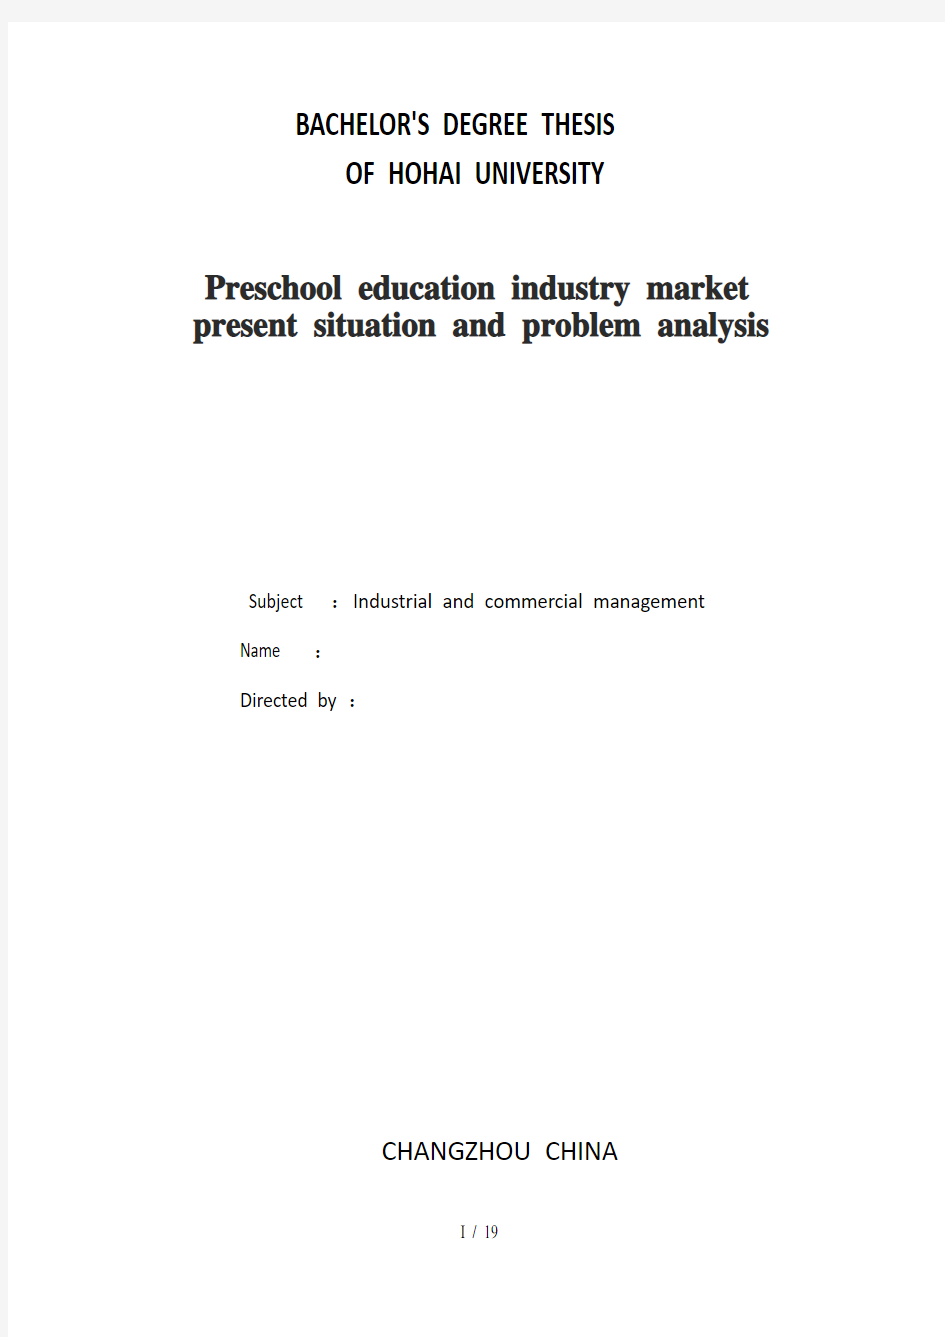 幼教行业市场现状及问题分析版